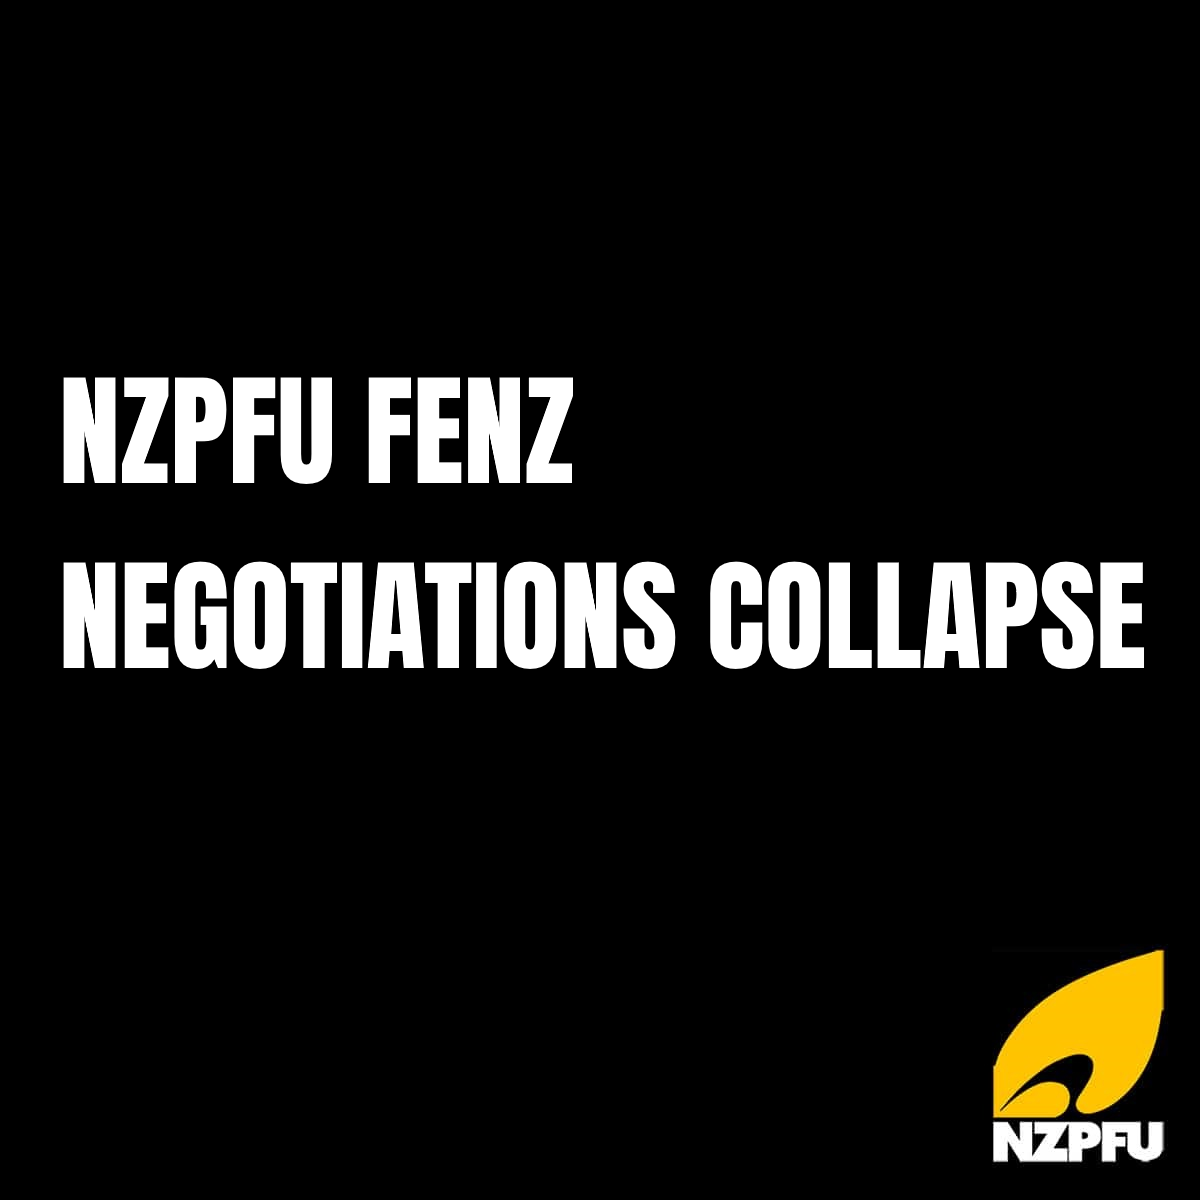 NZPFU FENZ NEGOTIATIONS COLLAPSE